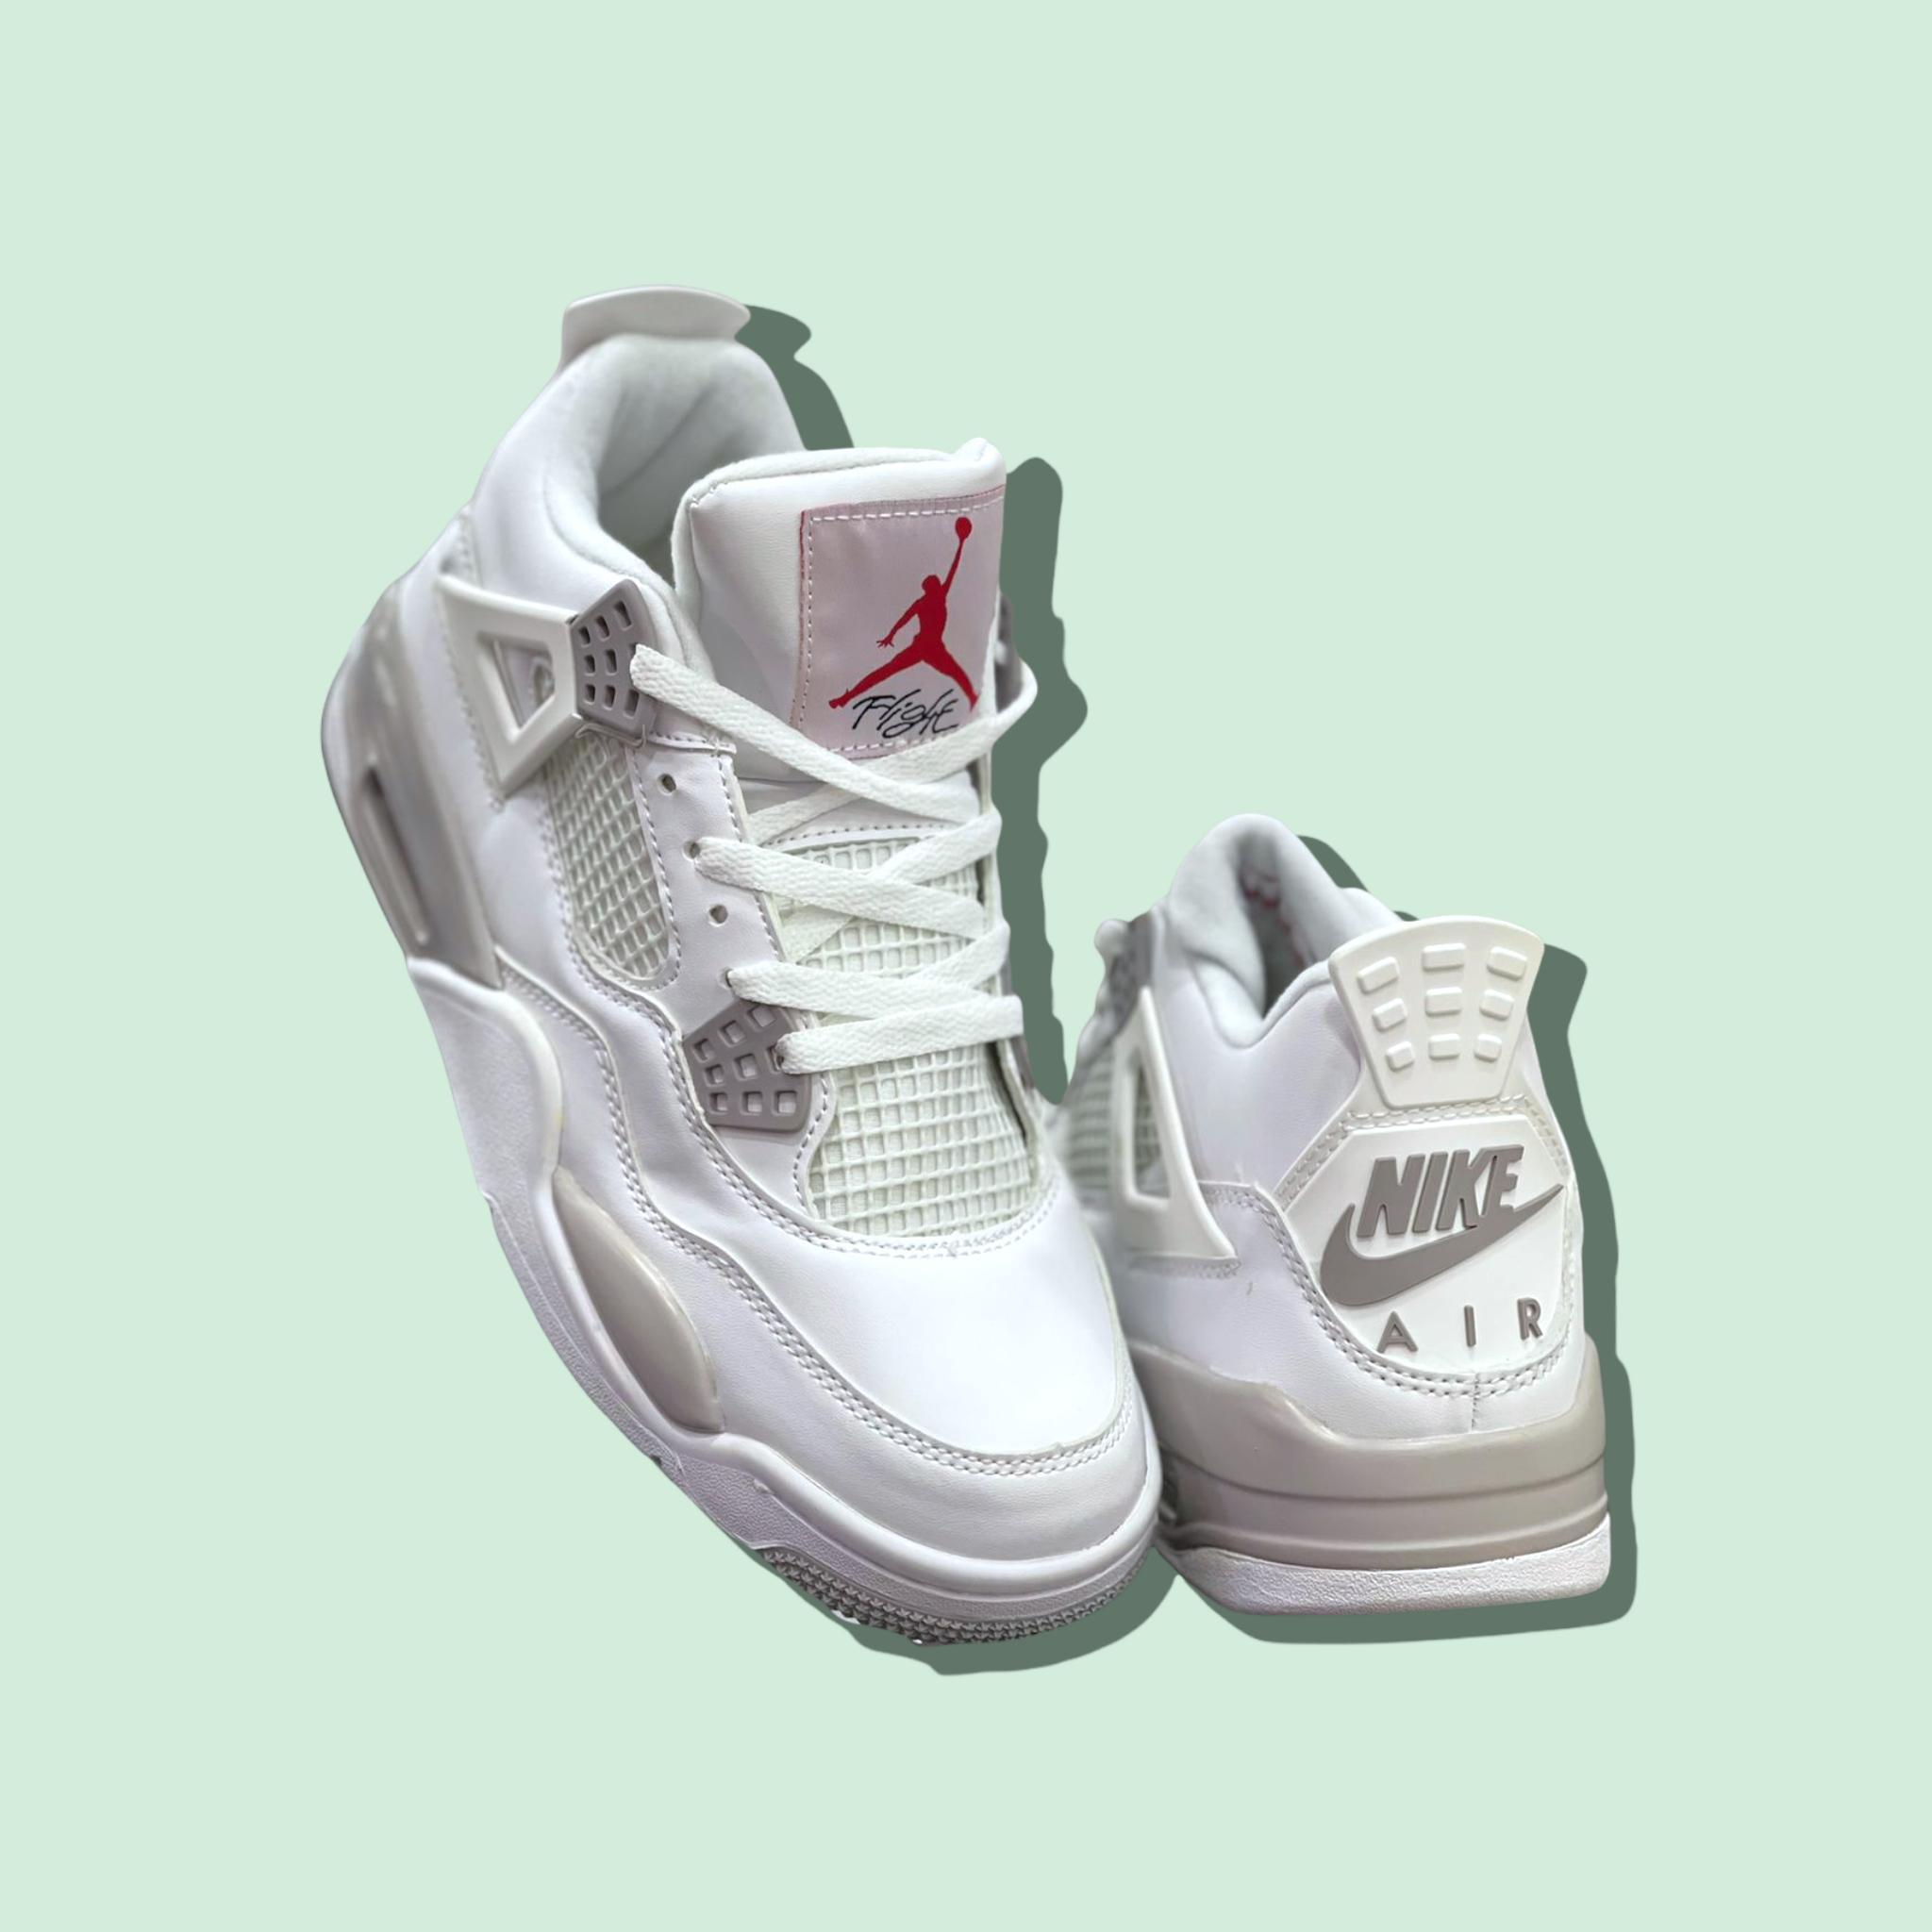 Nike air jordan blancos logo gris